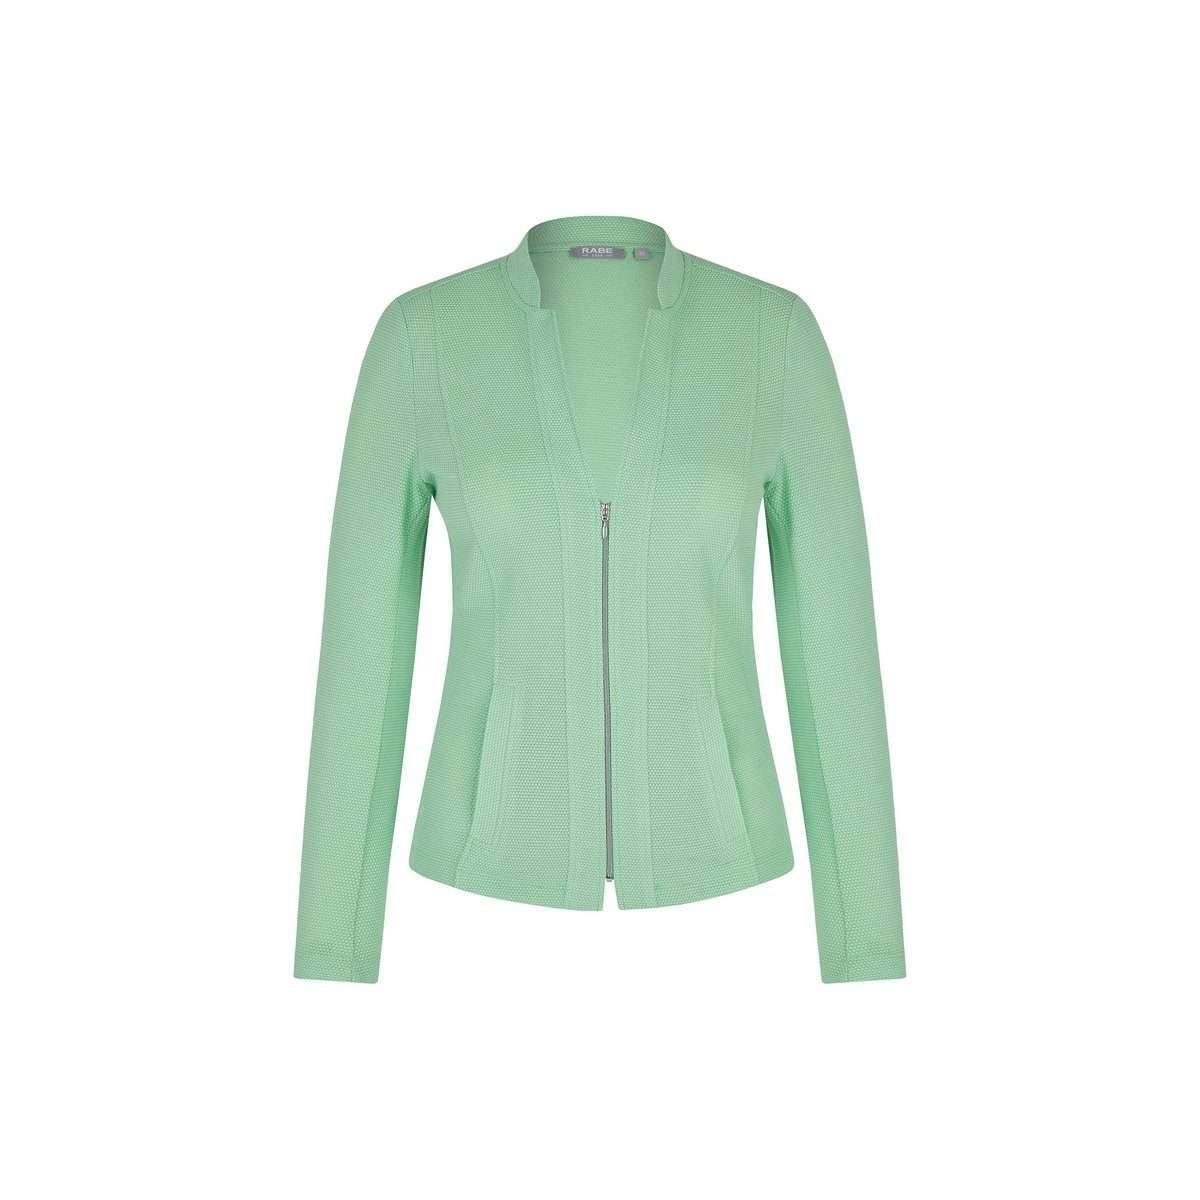 Функциональная куртка 3-в-1 зеленая обычная (1 шт.)